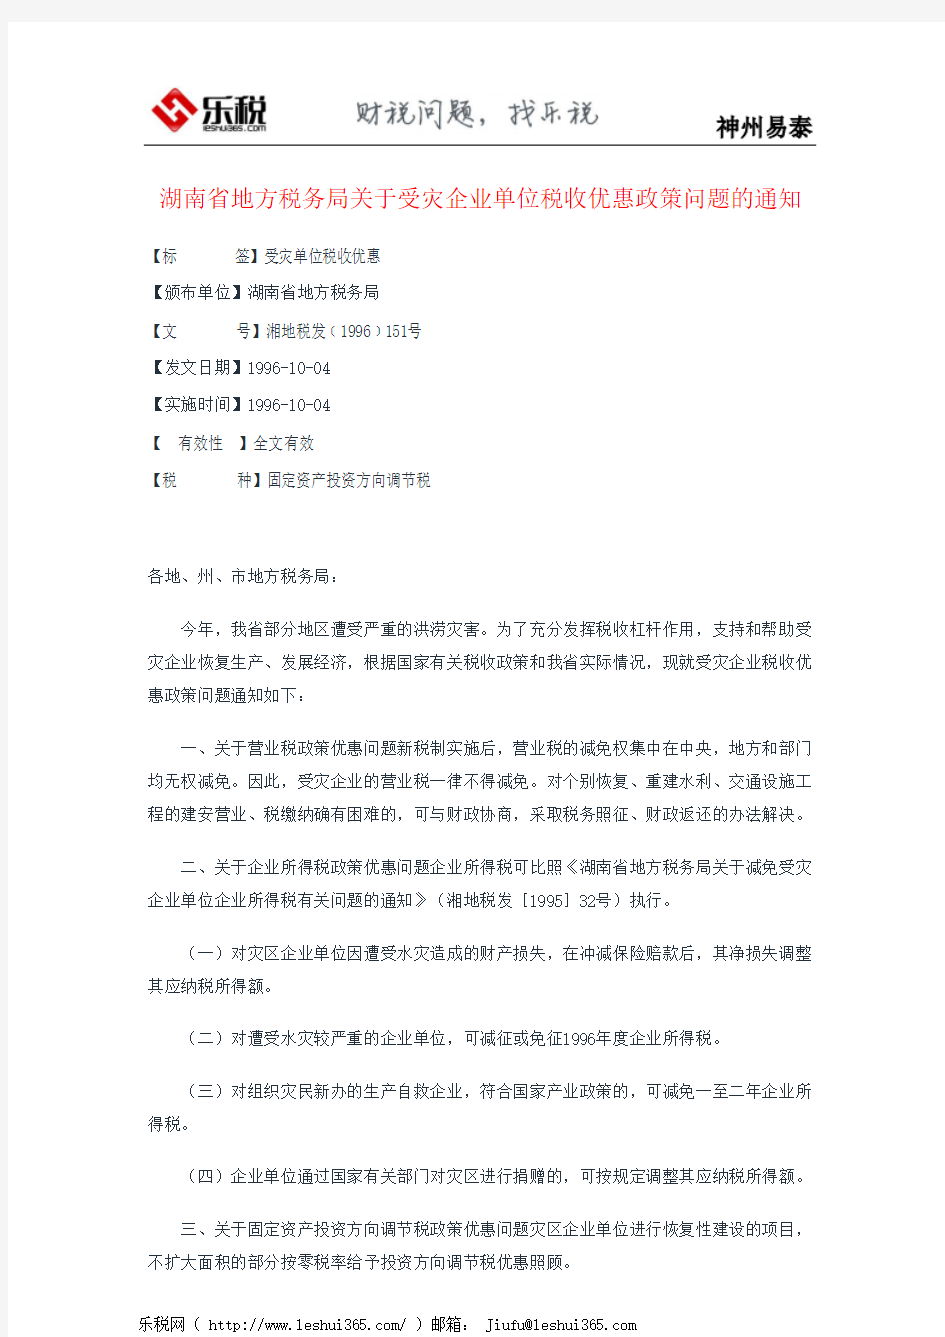 湖南省地方税务局关于受灾企业单位税收优惠政策问题的通知